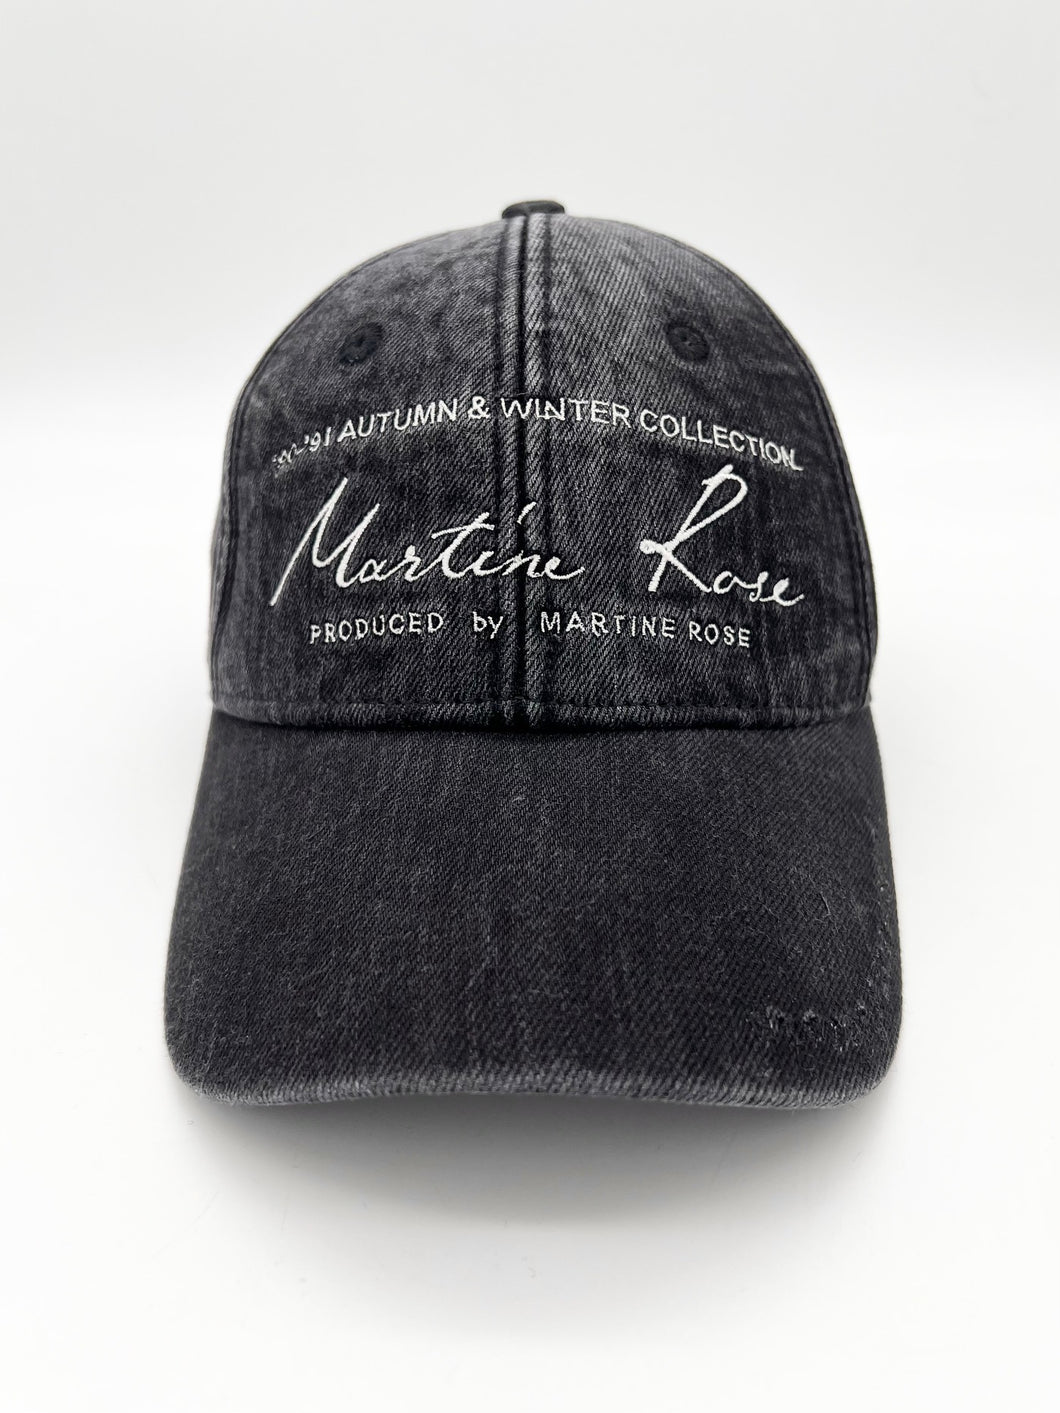 Martine Rose signature cap